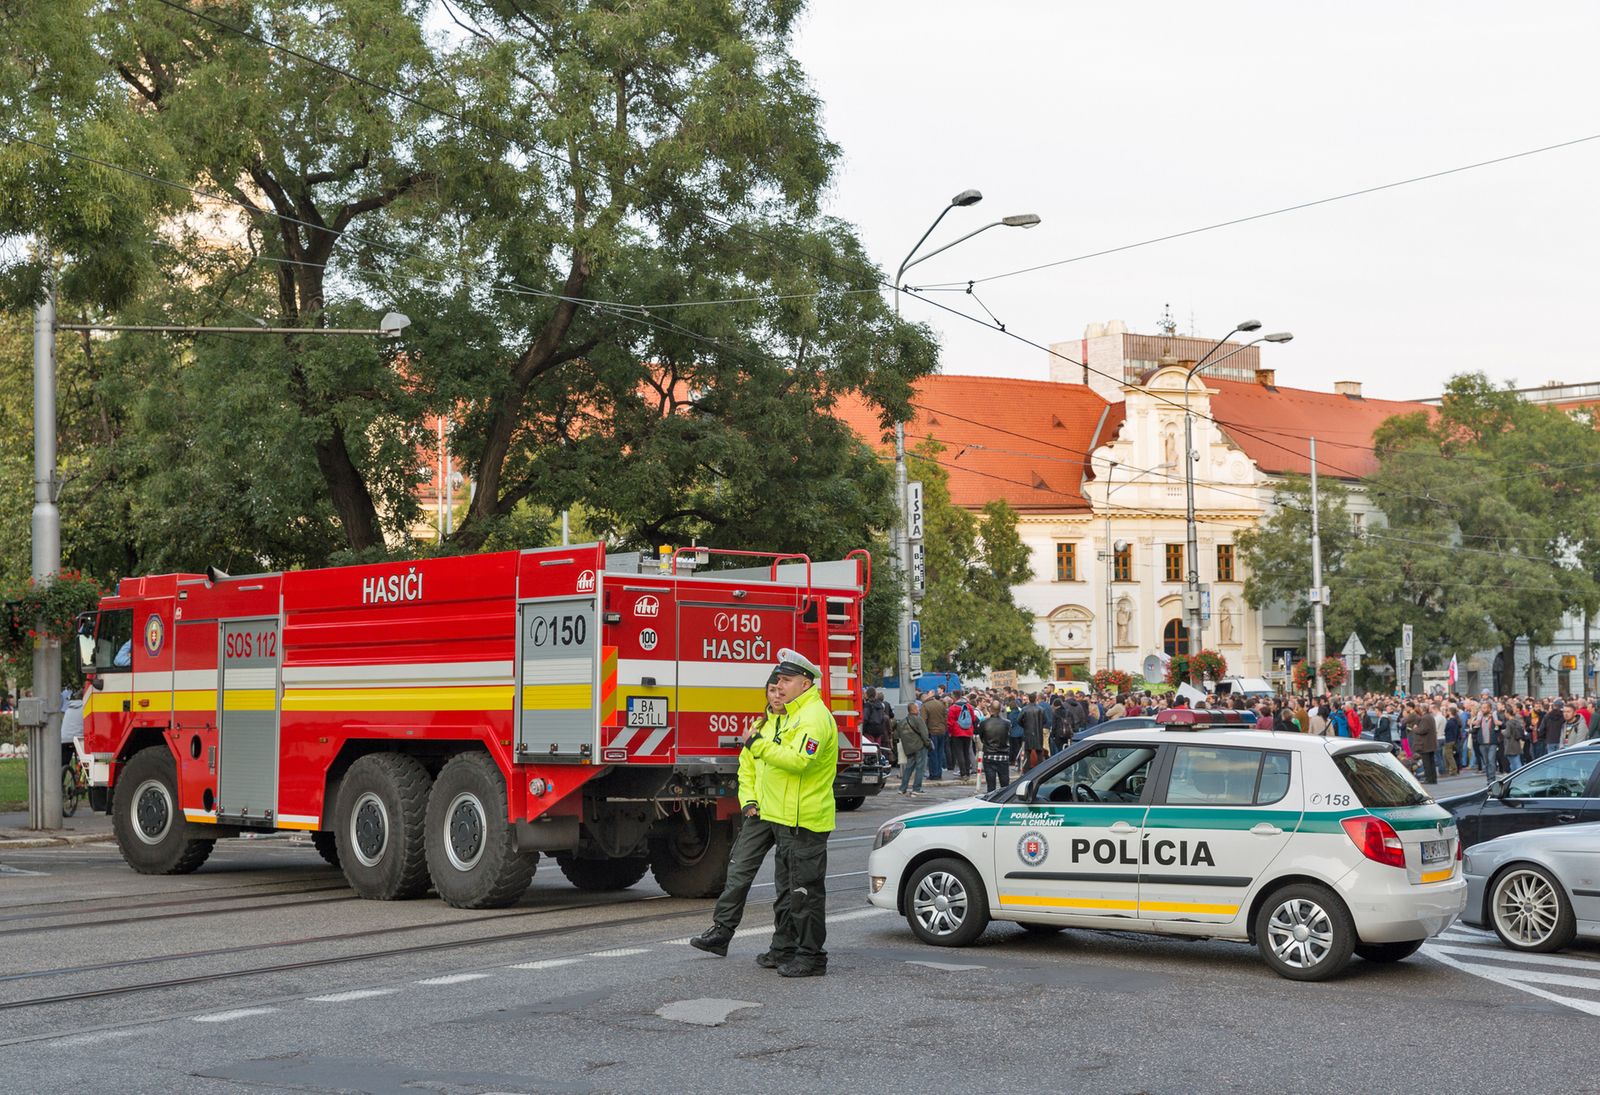 Neuf personnes originaires de la République tchèque ont été blessées dans une explosion de gaz en Slovaquie, dont des enfants